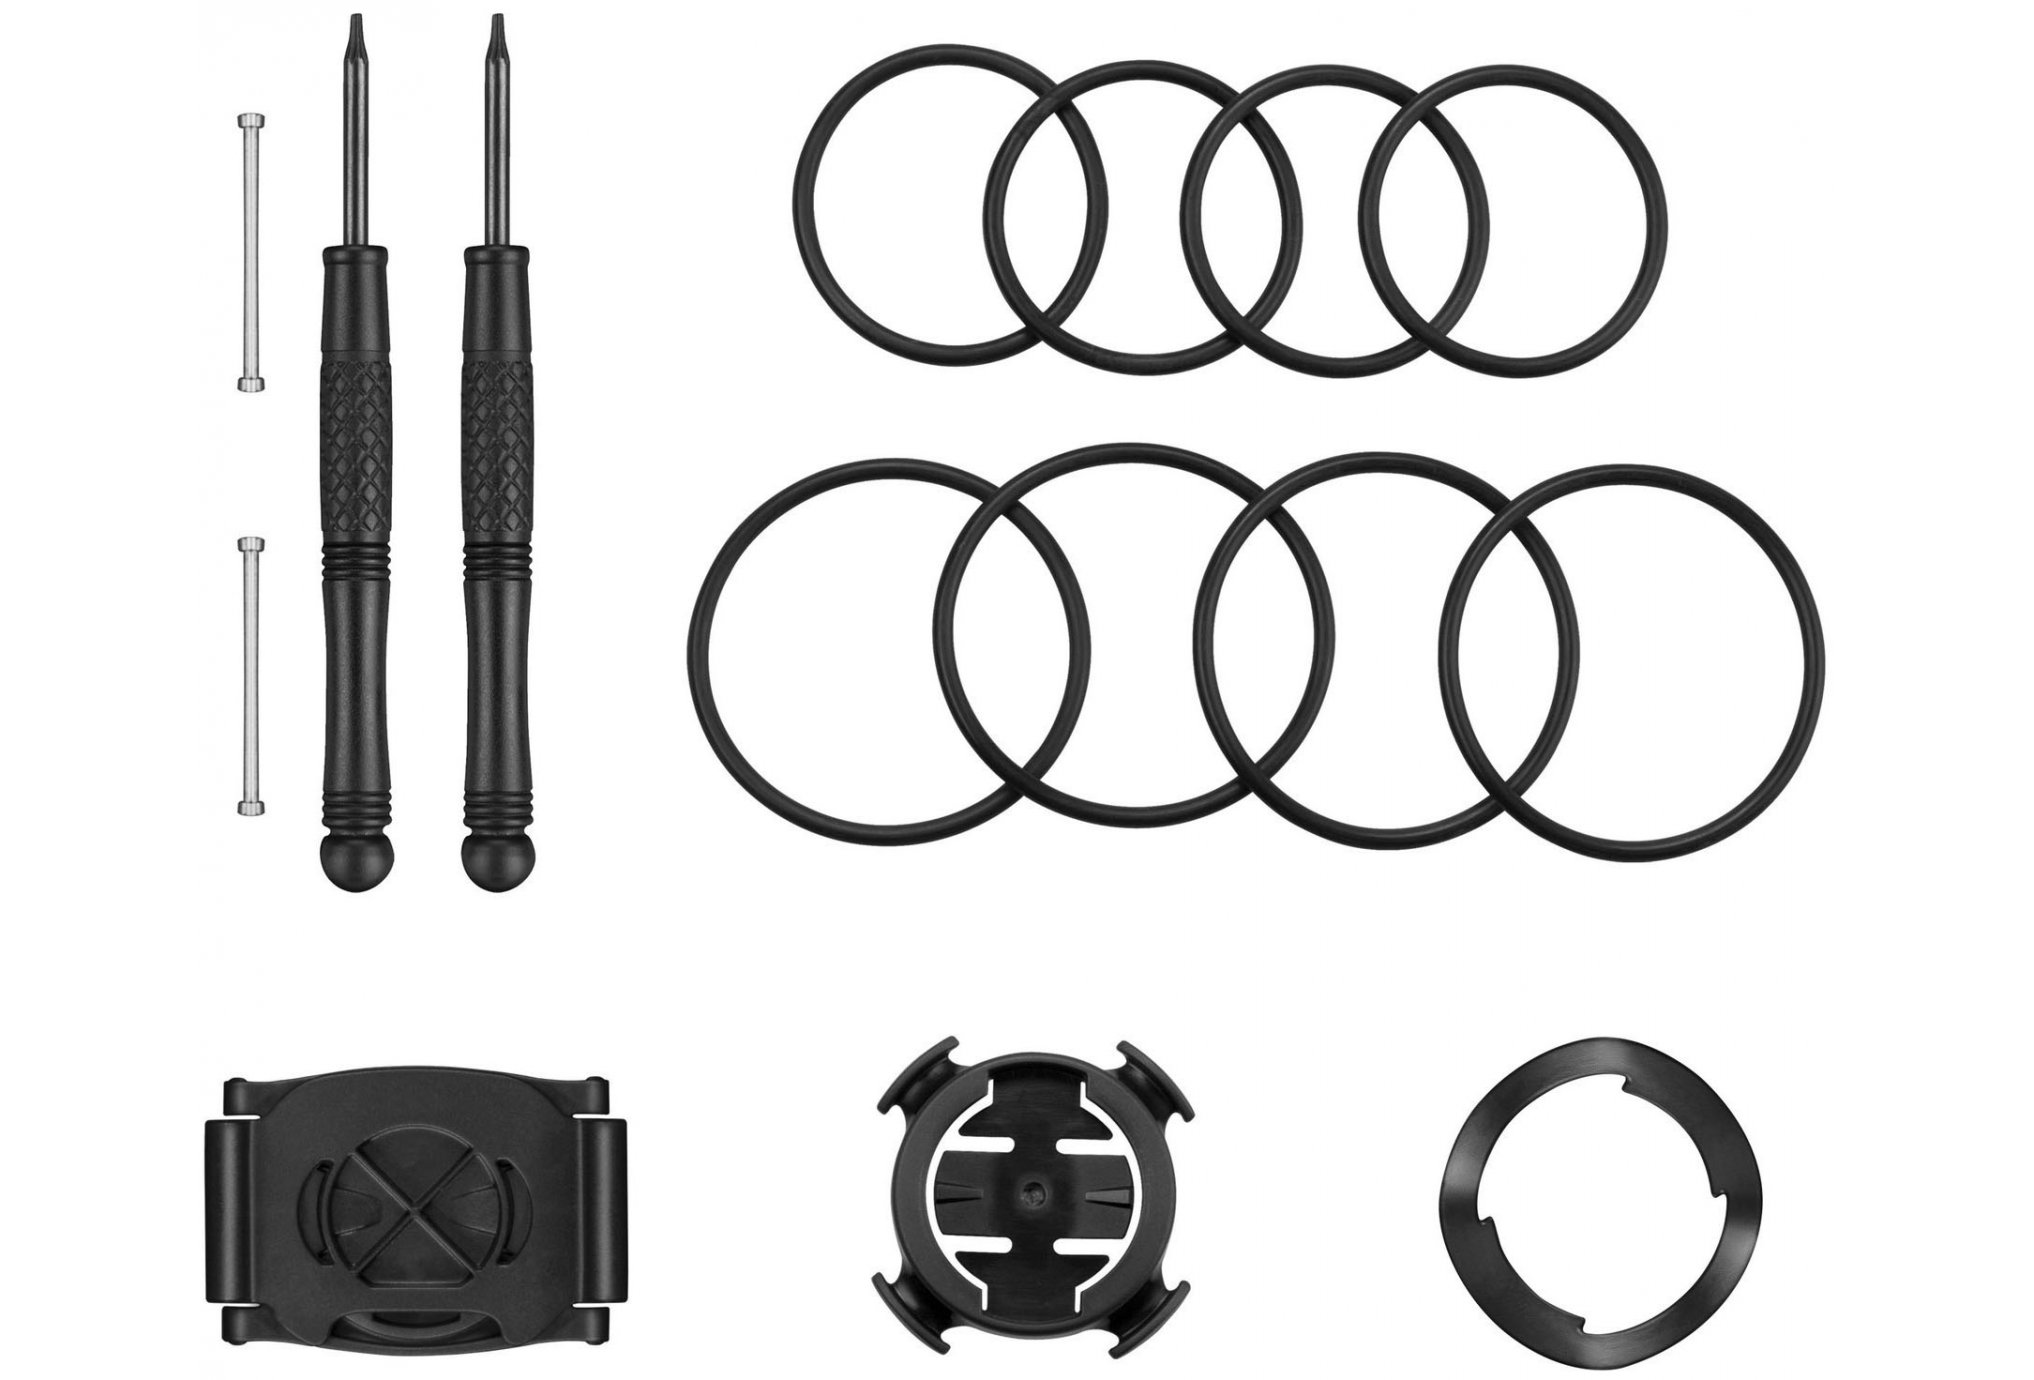 Garmin Kit de montage Forerunner 920XT Accessoires montres/ Bracelets